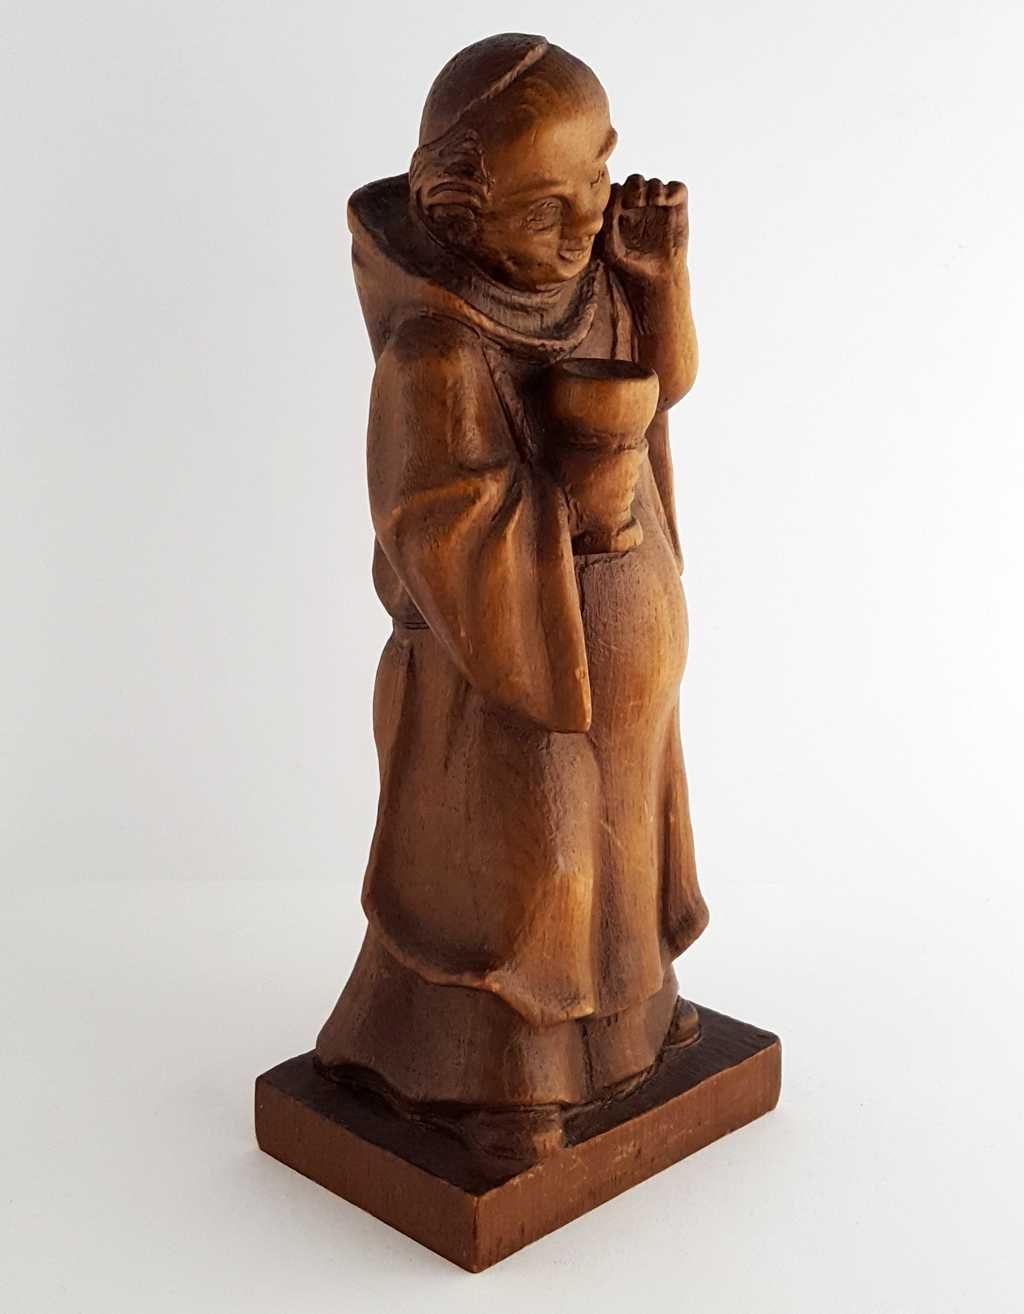 Rzeźba mnicha z około 1900 roku